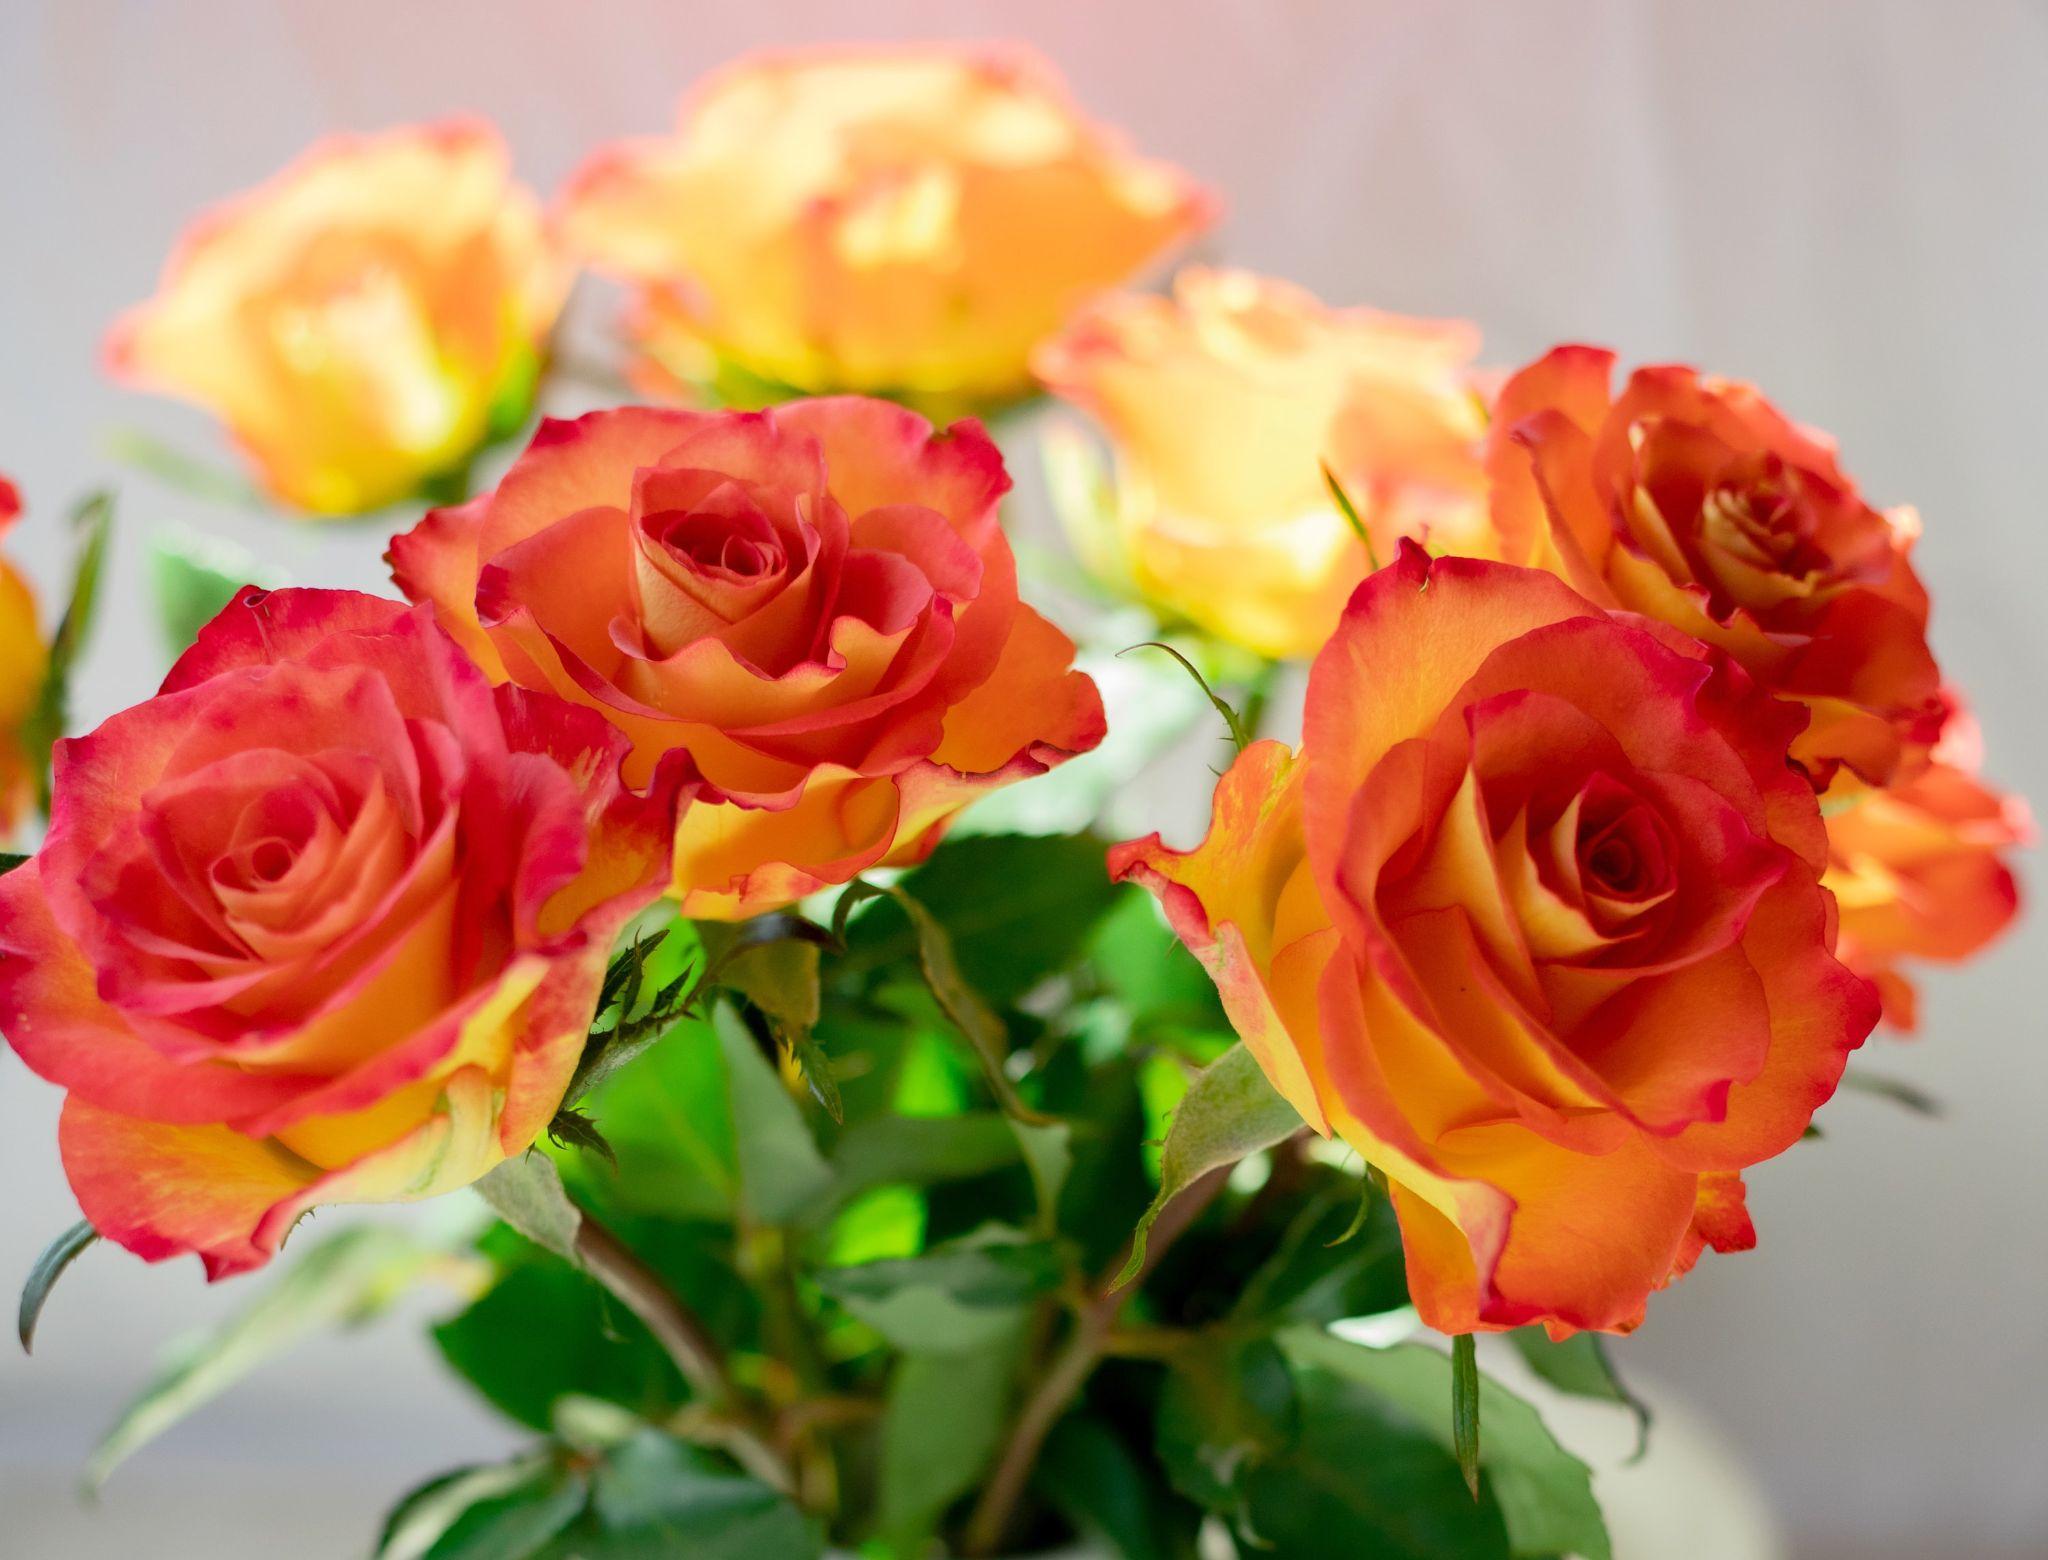 Nét đẹp hồn nhiên của hoa hồng vàng | Hoa hồng vàng, Hoa hồng, Hoa